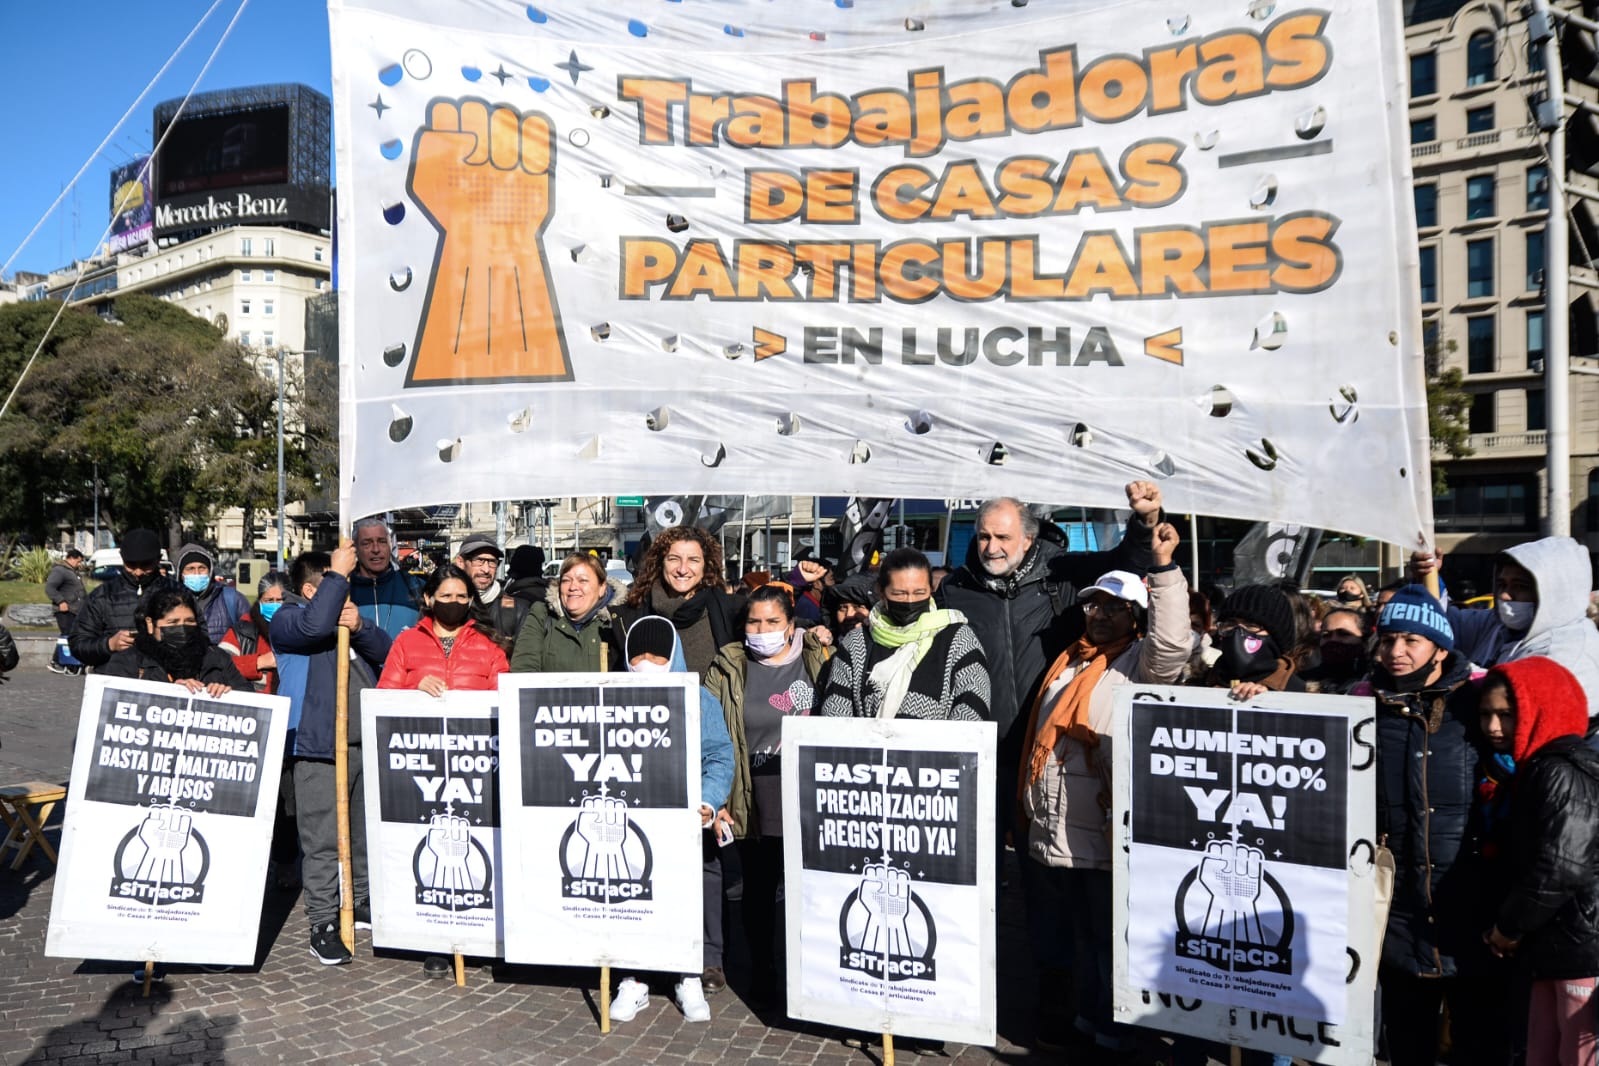 Movilización y reunión del Sindicato de Trabajadoras de Casas Particulares con el funcionario Roberto Picozzi